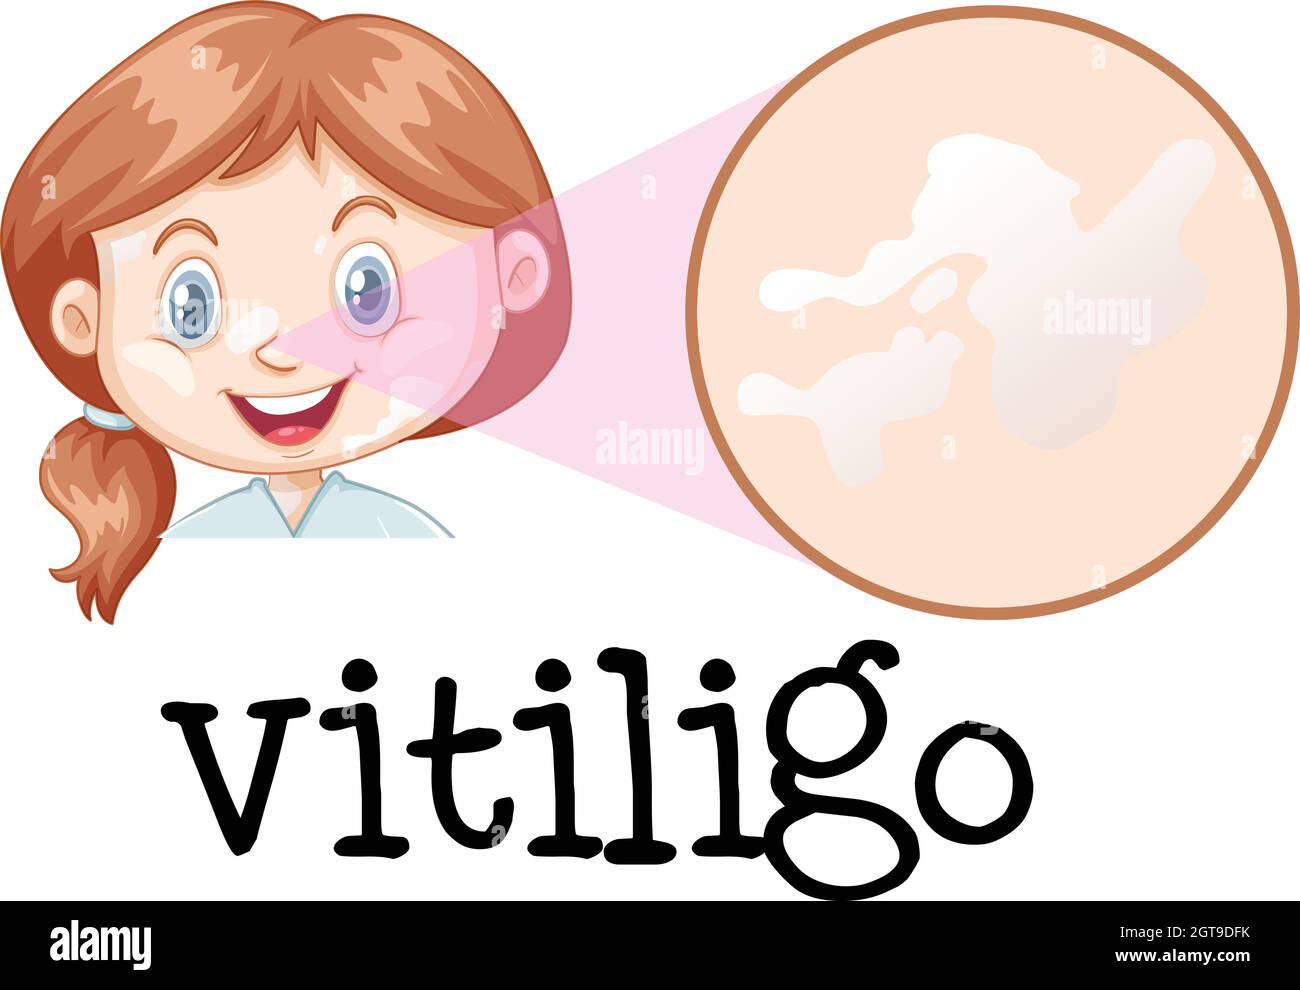 Una faccia della ragazza con Vitiligo Illustrazione Vettoriale